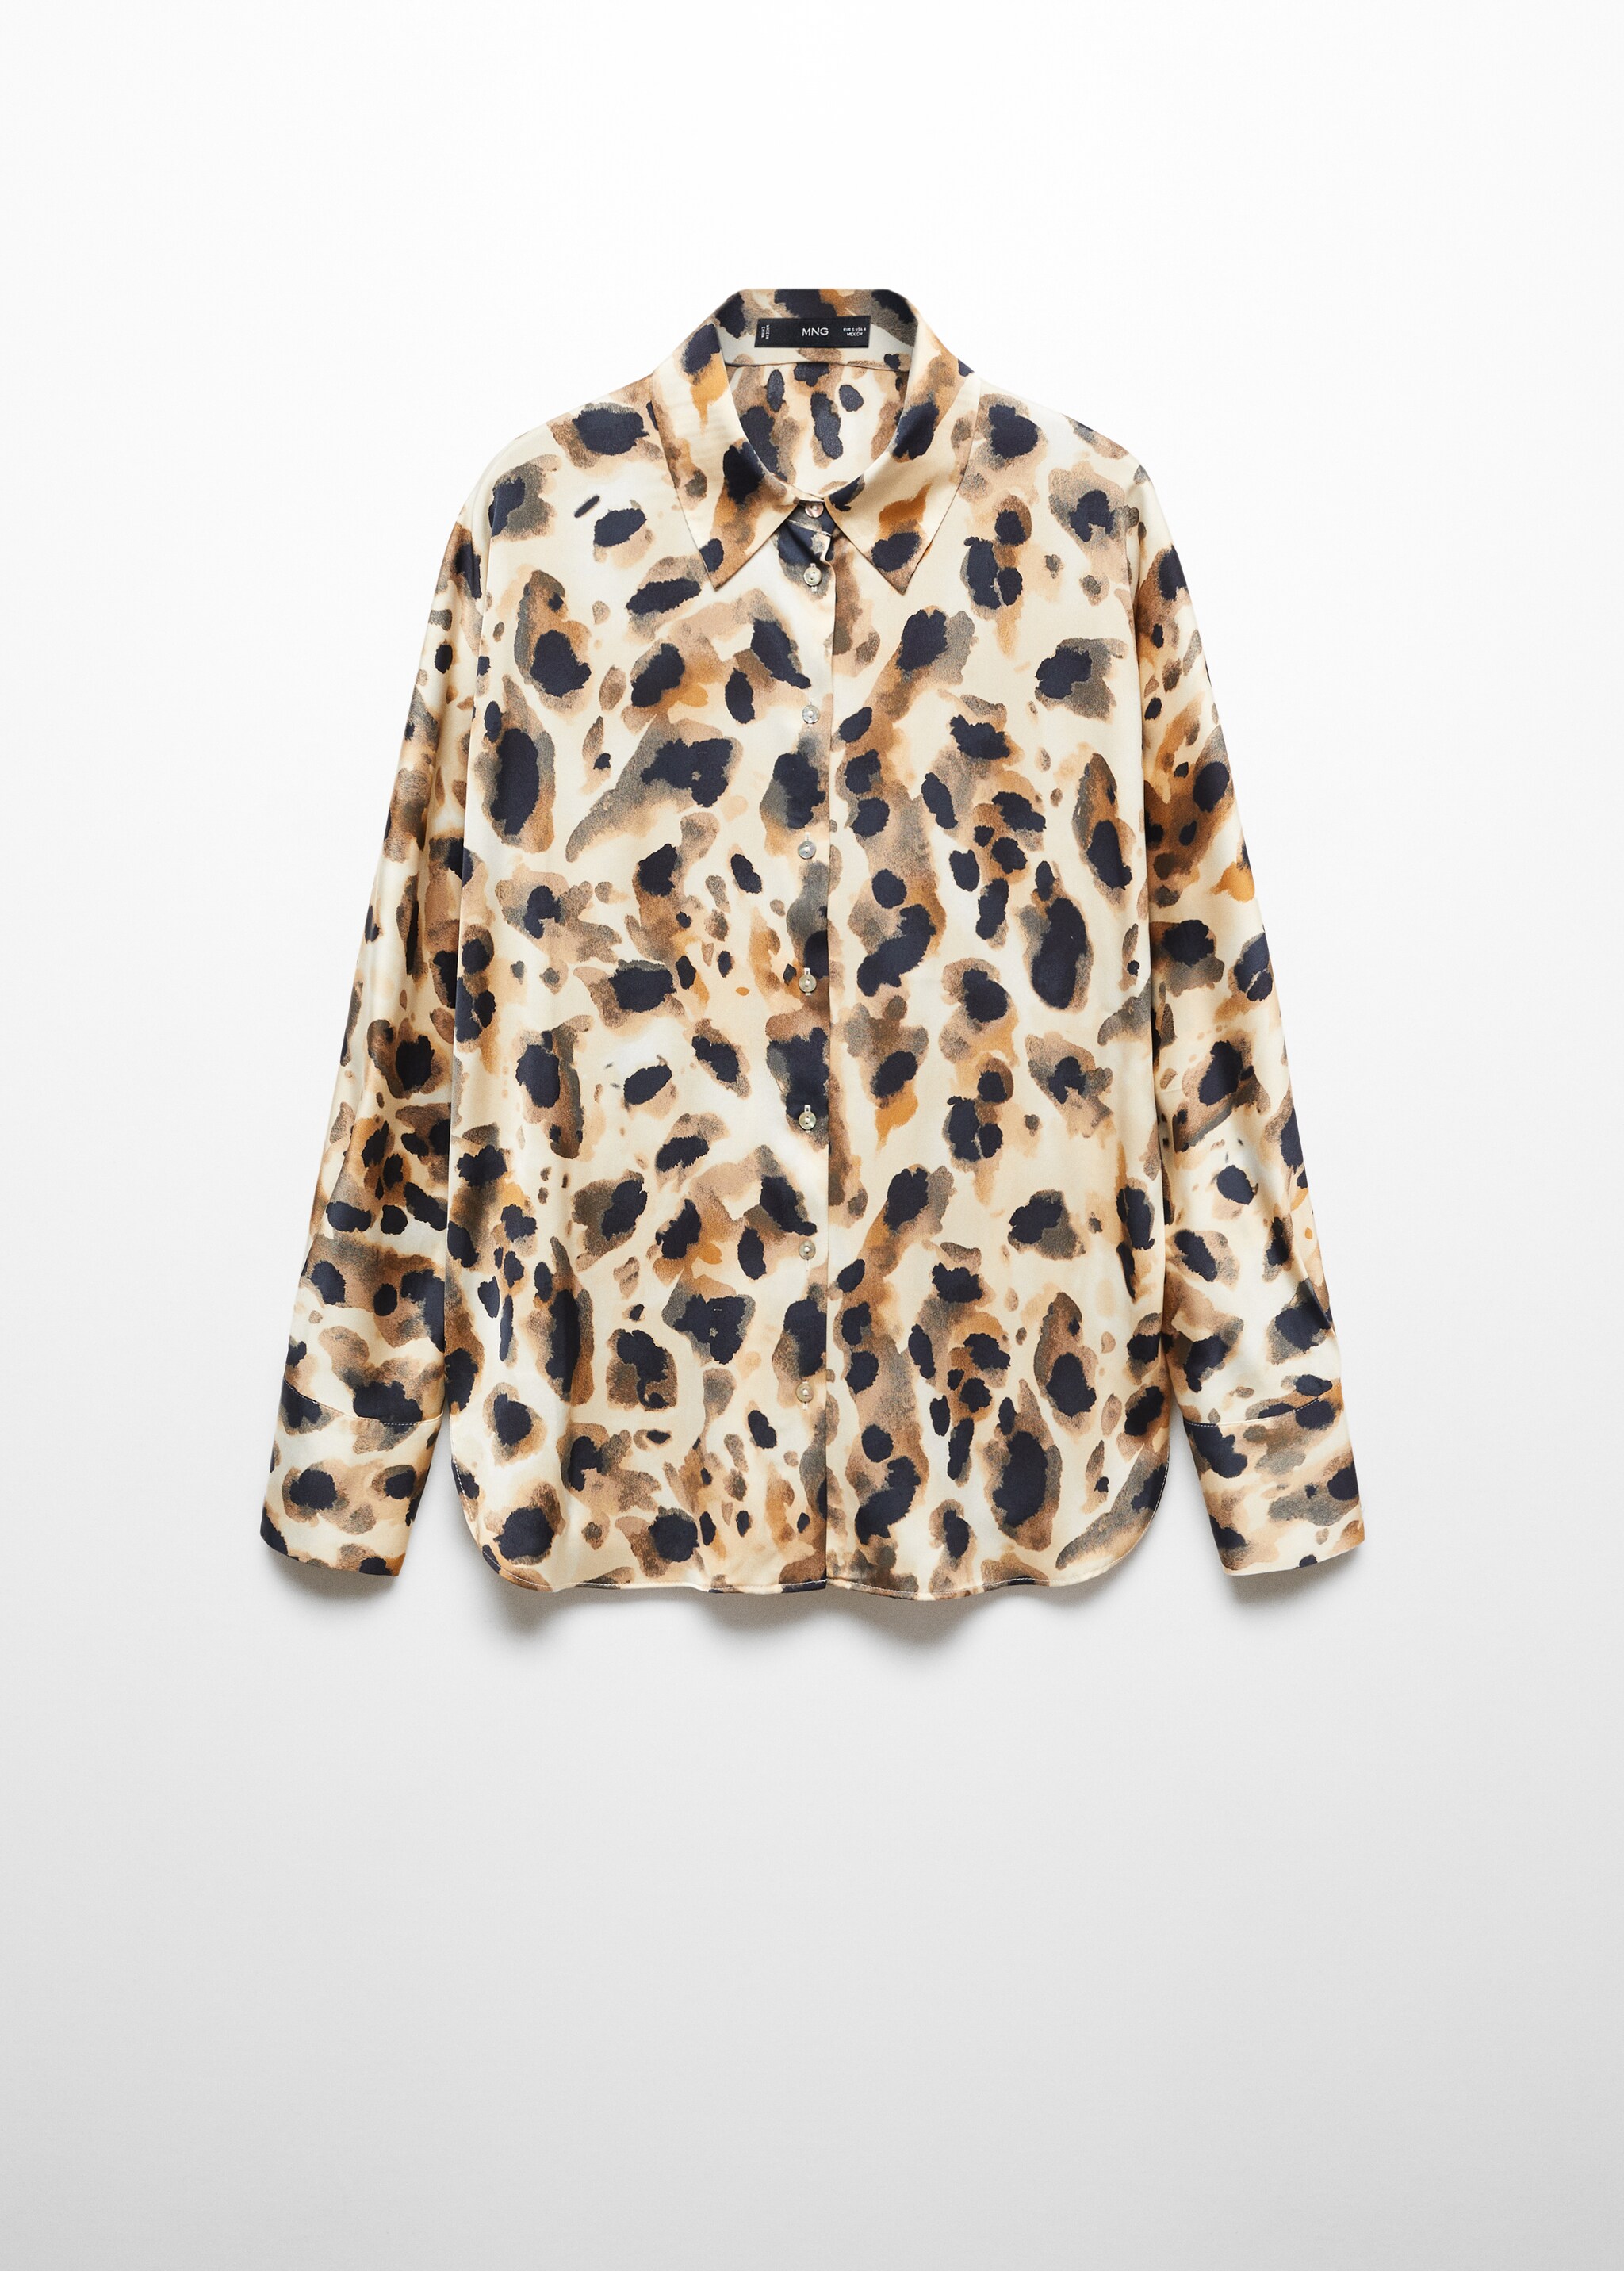 Camisa satinada leopardo - Artículo sin modelo